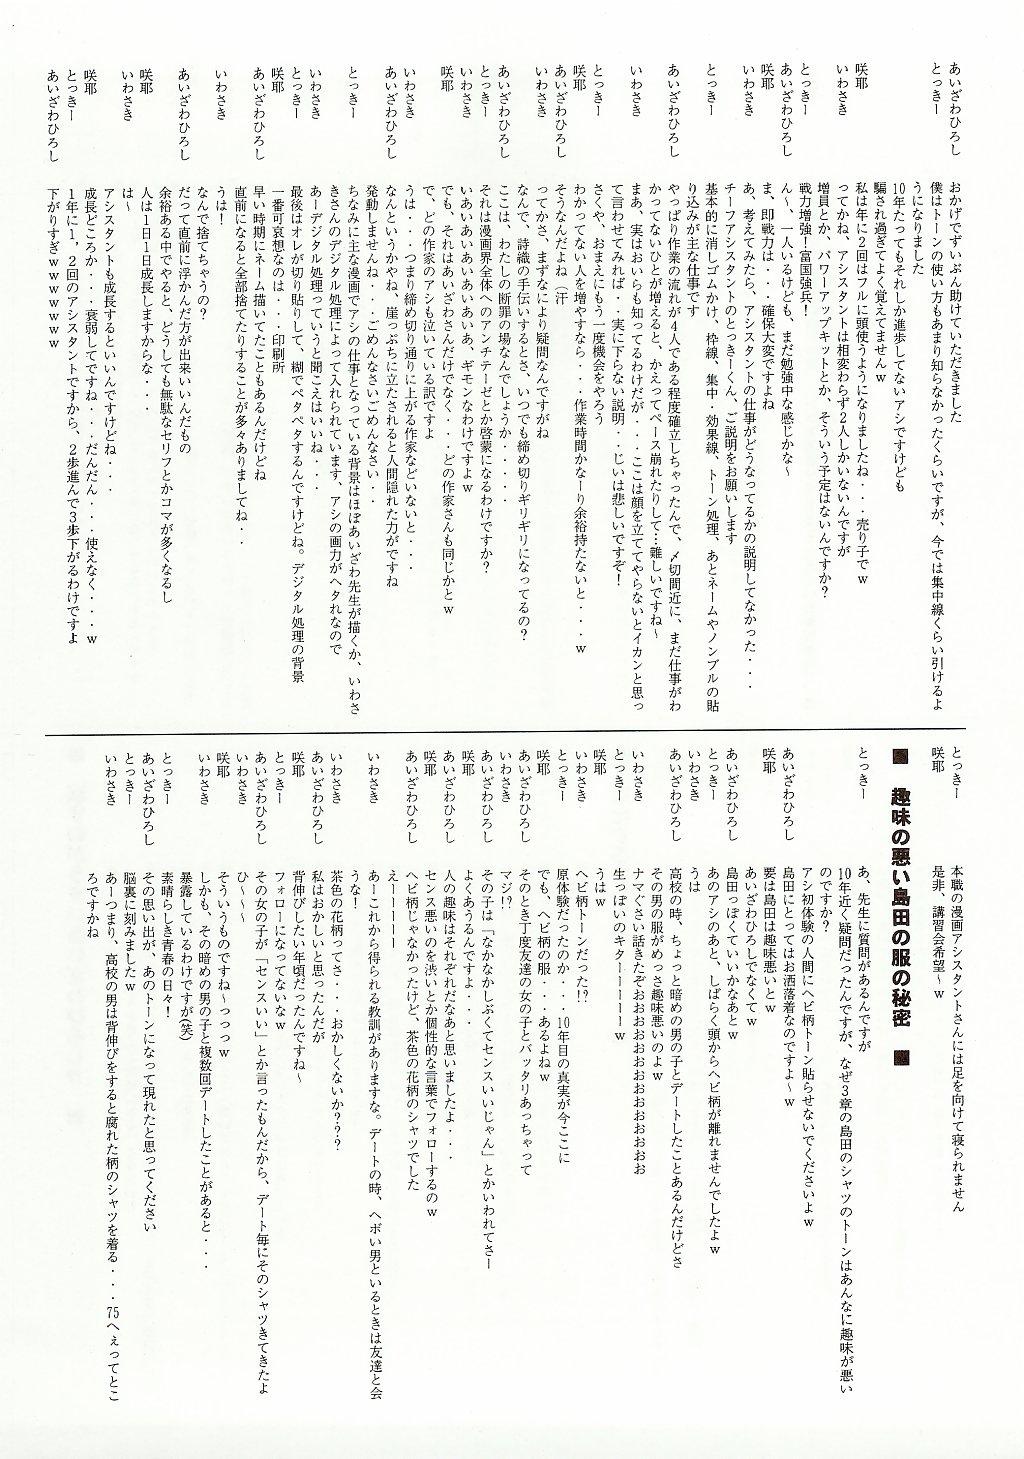 Shiori Bonus Track 10 shuunenn Kinenn Zenyasai bon 19